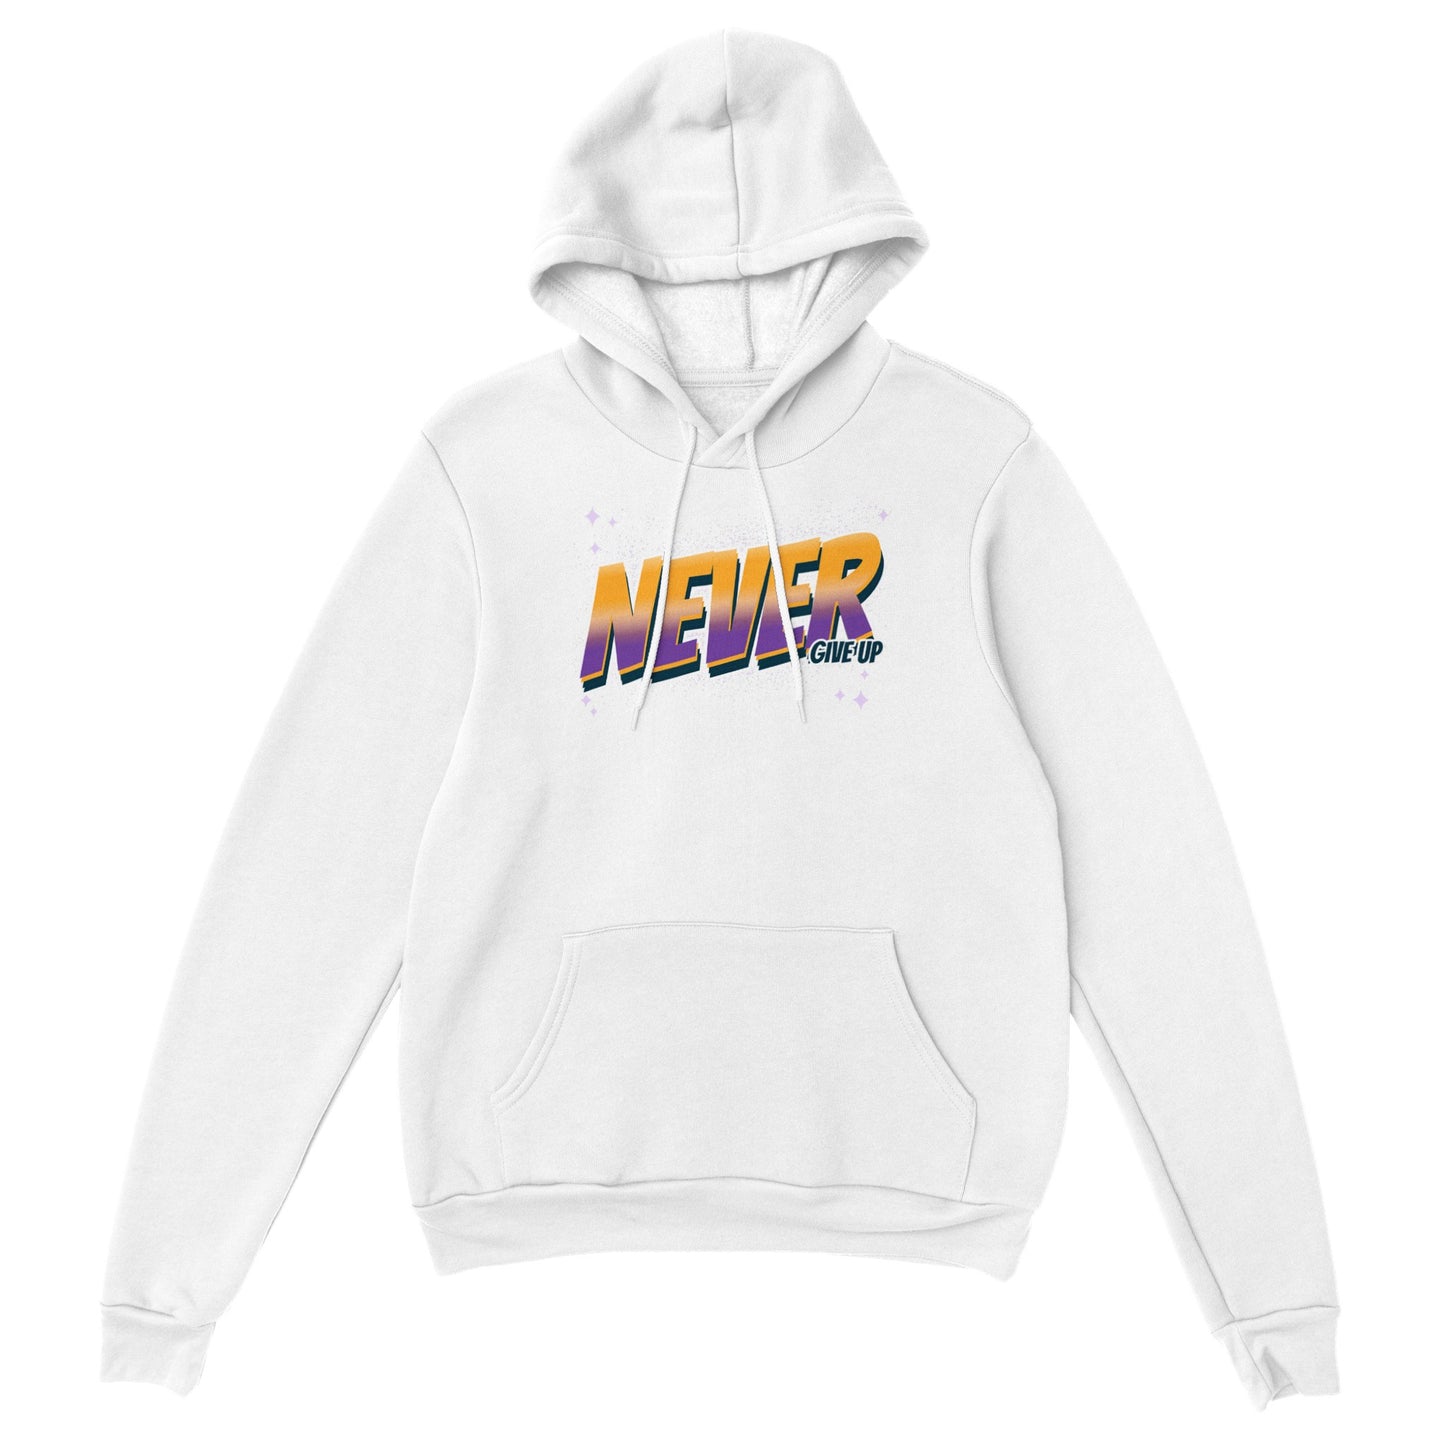 Streetwear clothing  hoodie dress hood street